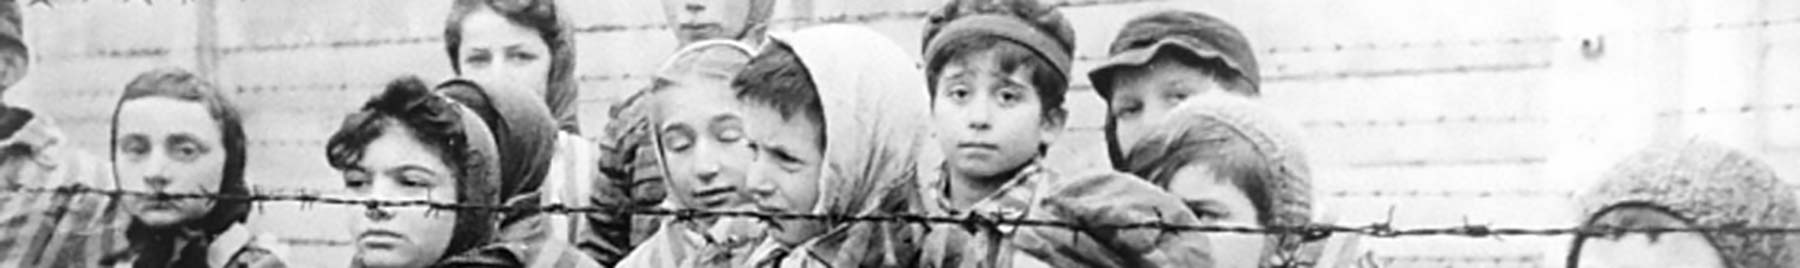 child survivors of Auschwitz in January 1945